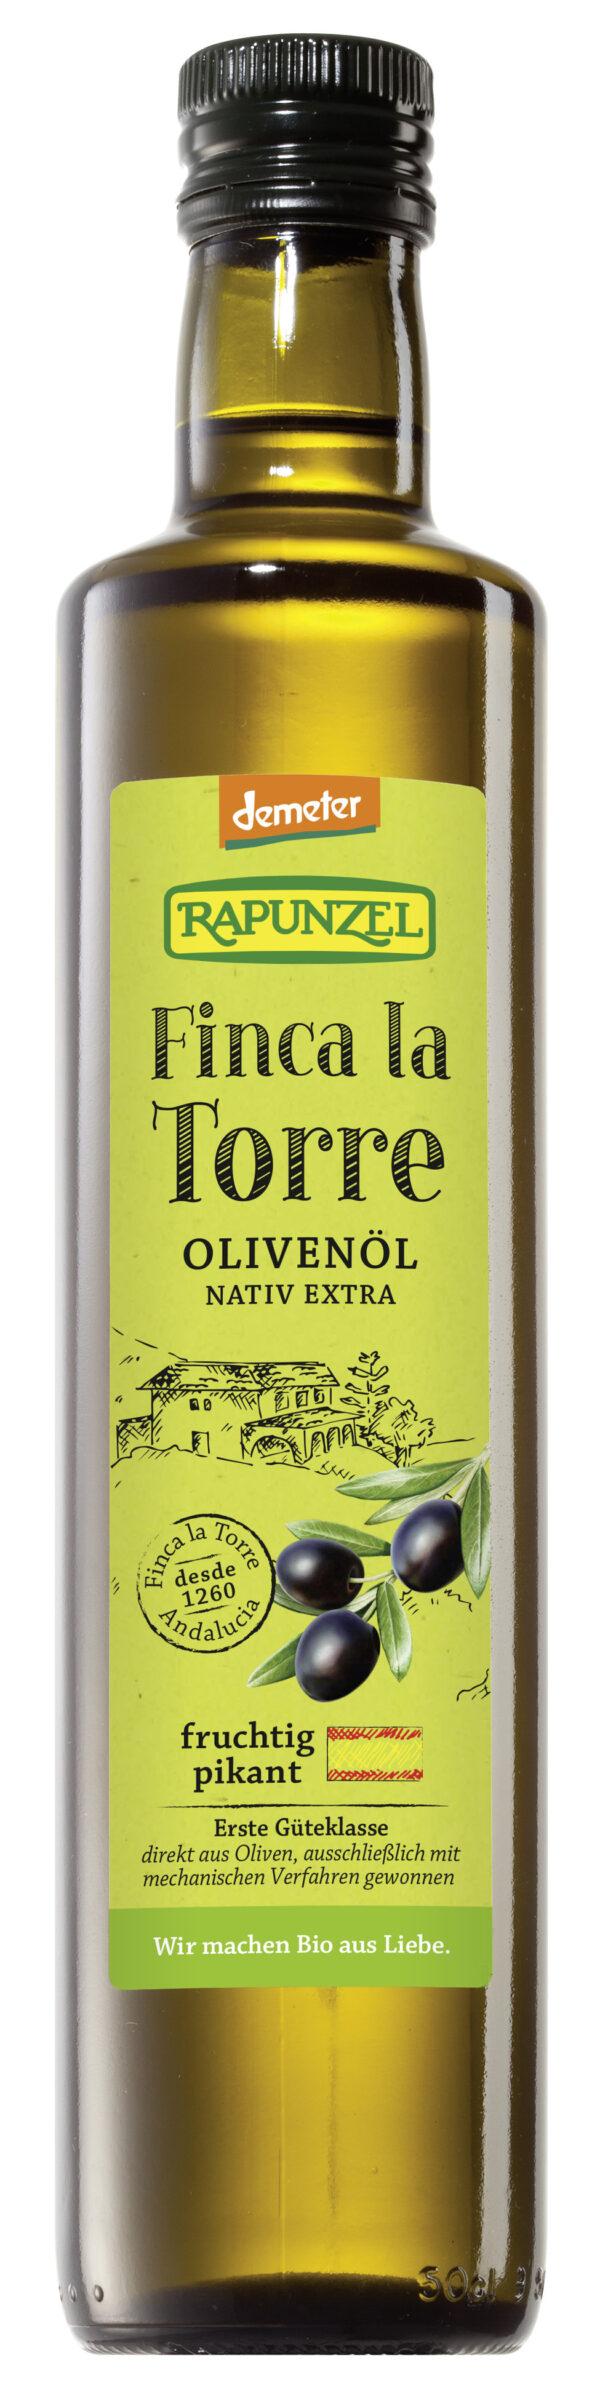 Rapunzel Olivenöl Finca la Torre, nativ extra, demeter 0,5l